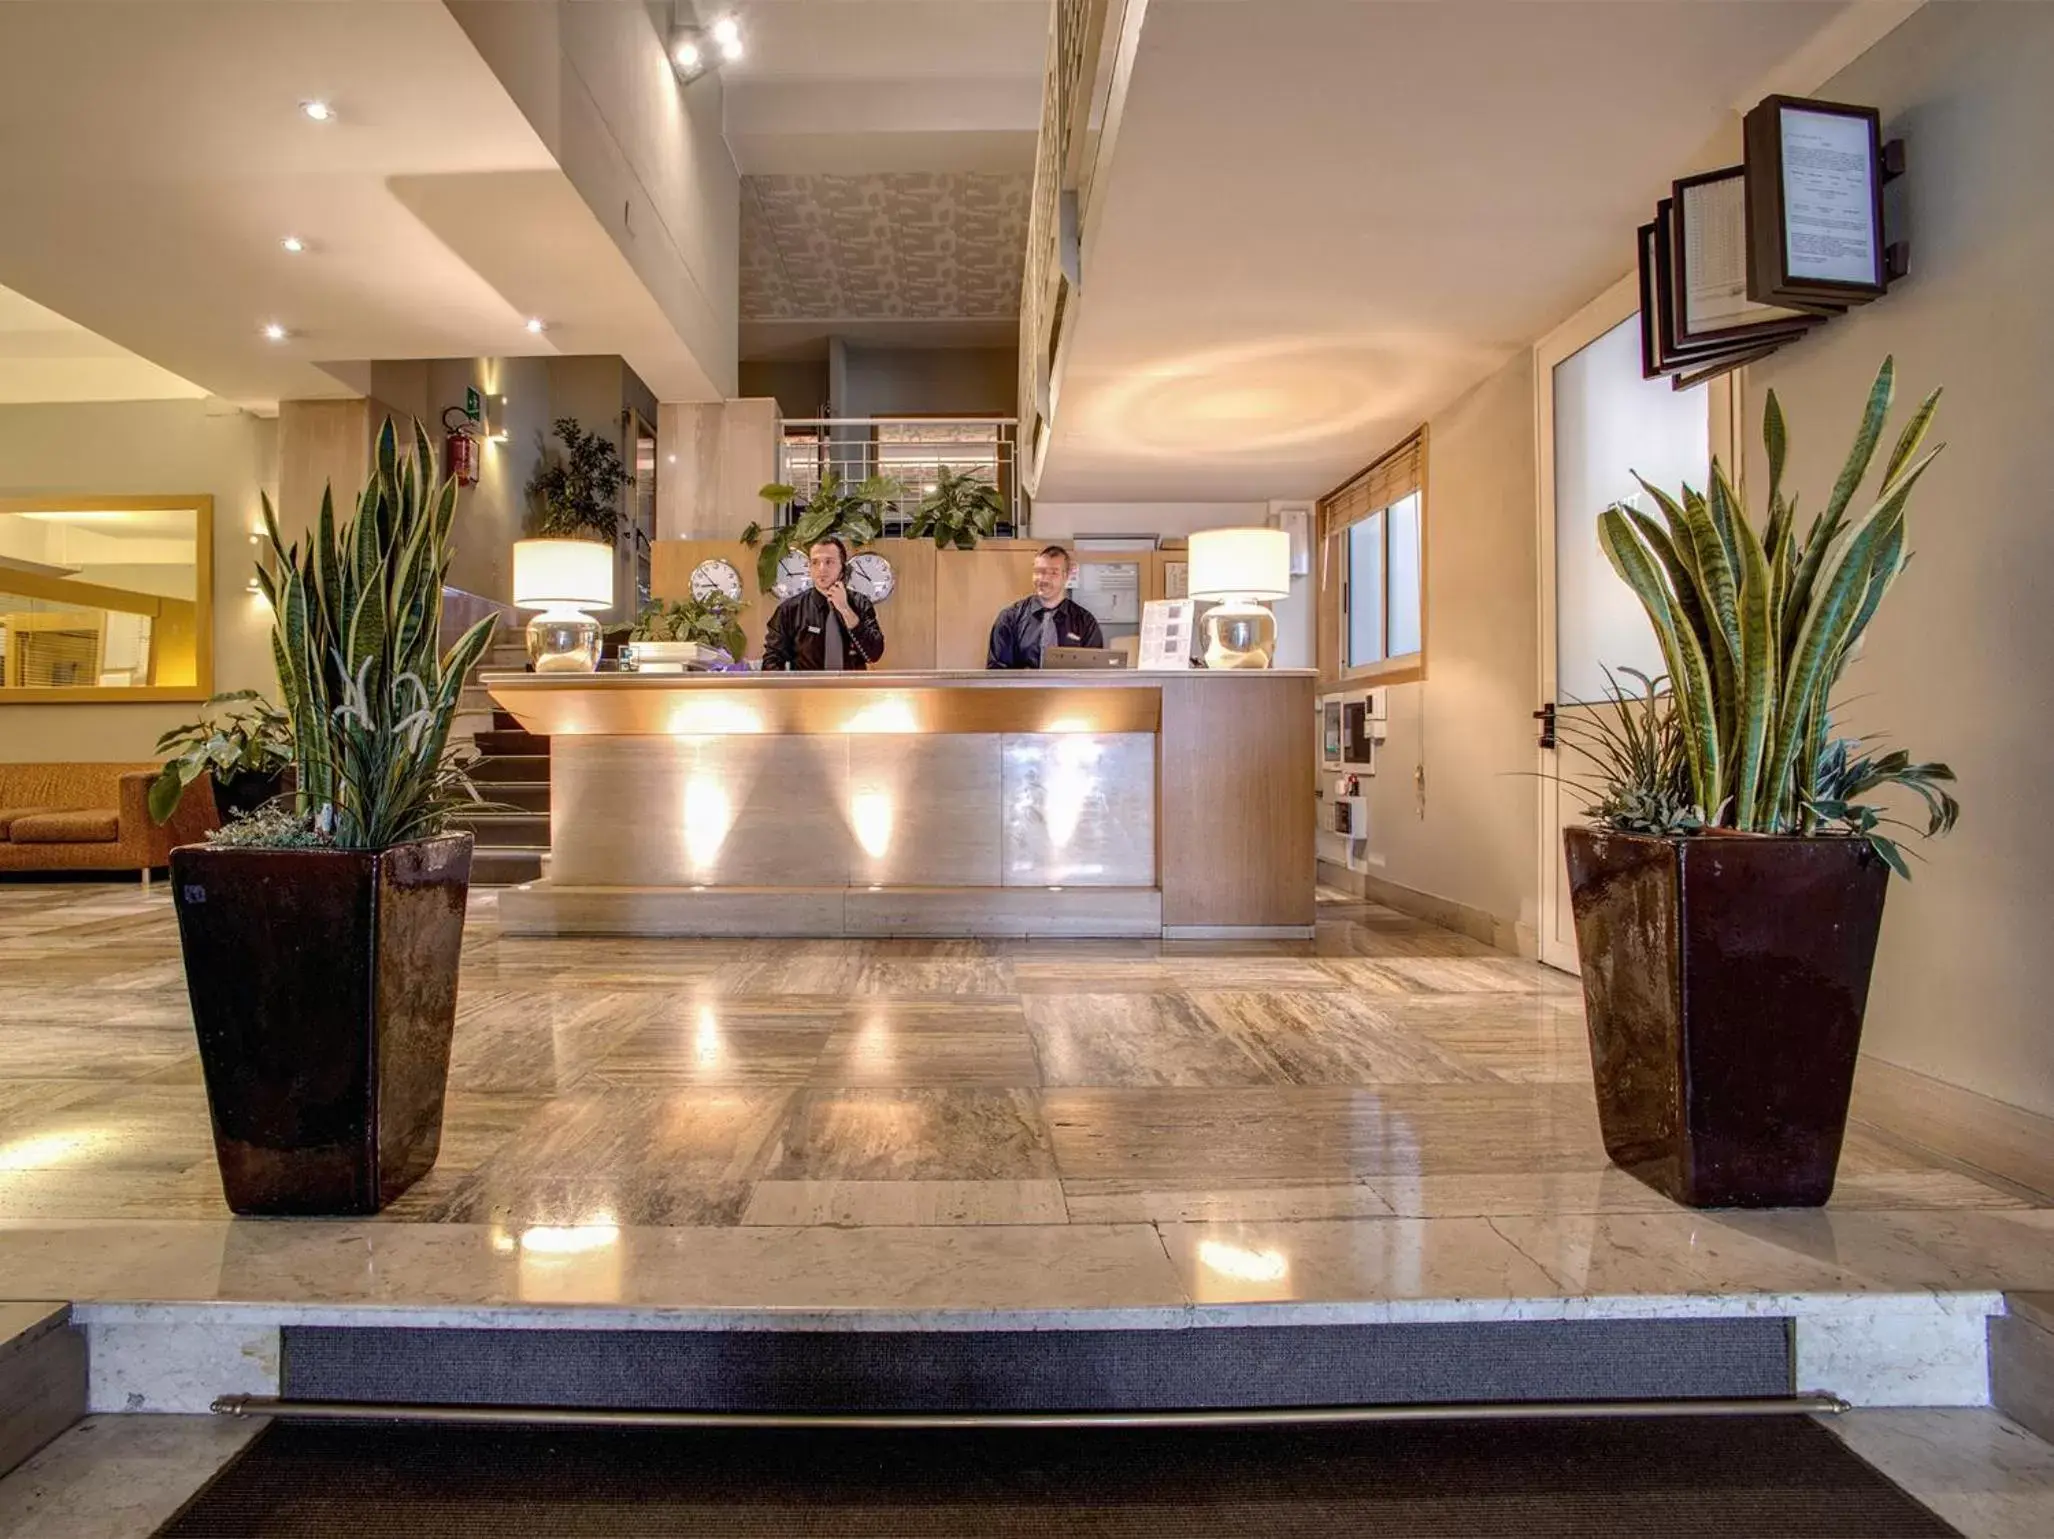 Lobby or reception, Lobby/Reception in Hotel Delle Nazioni